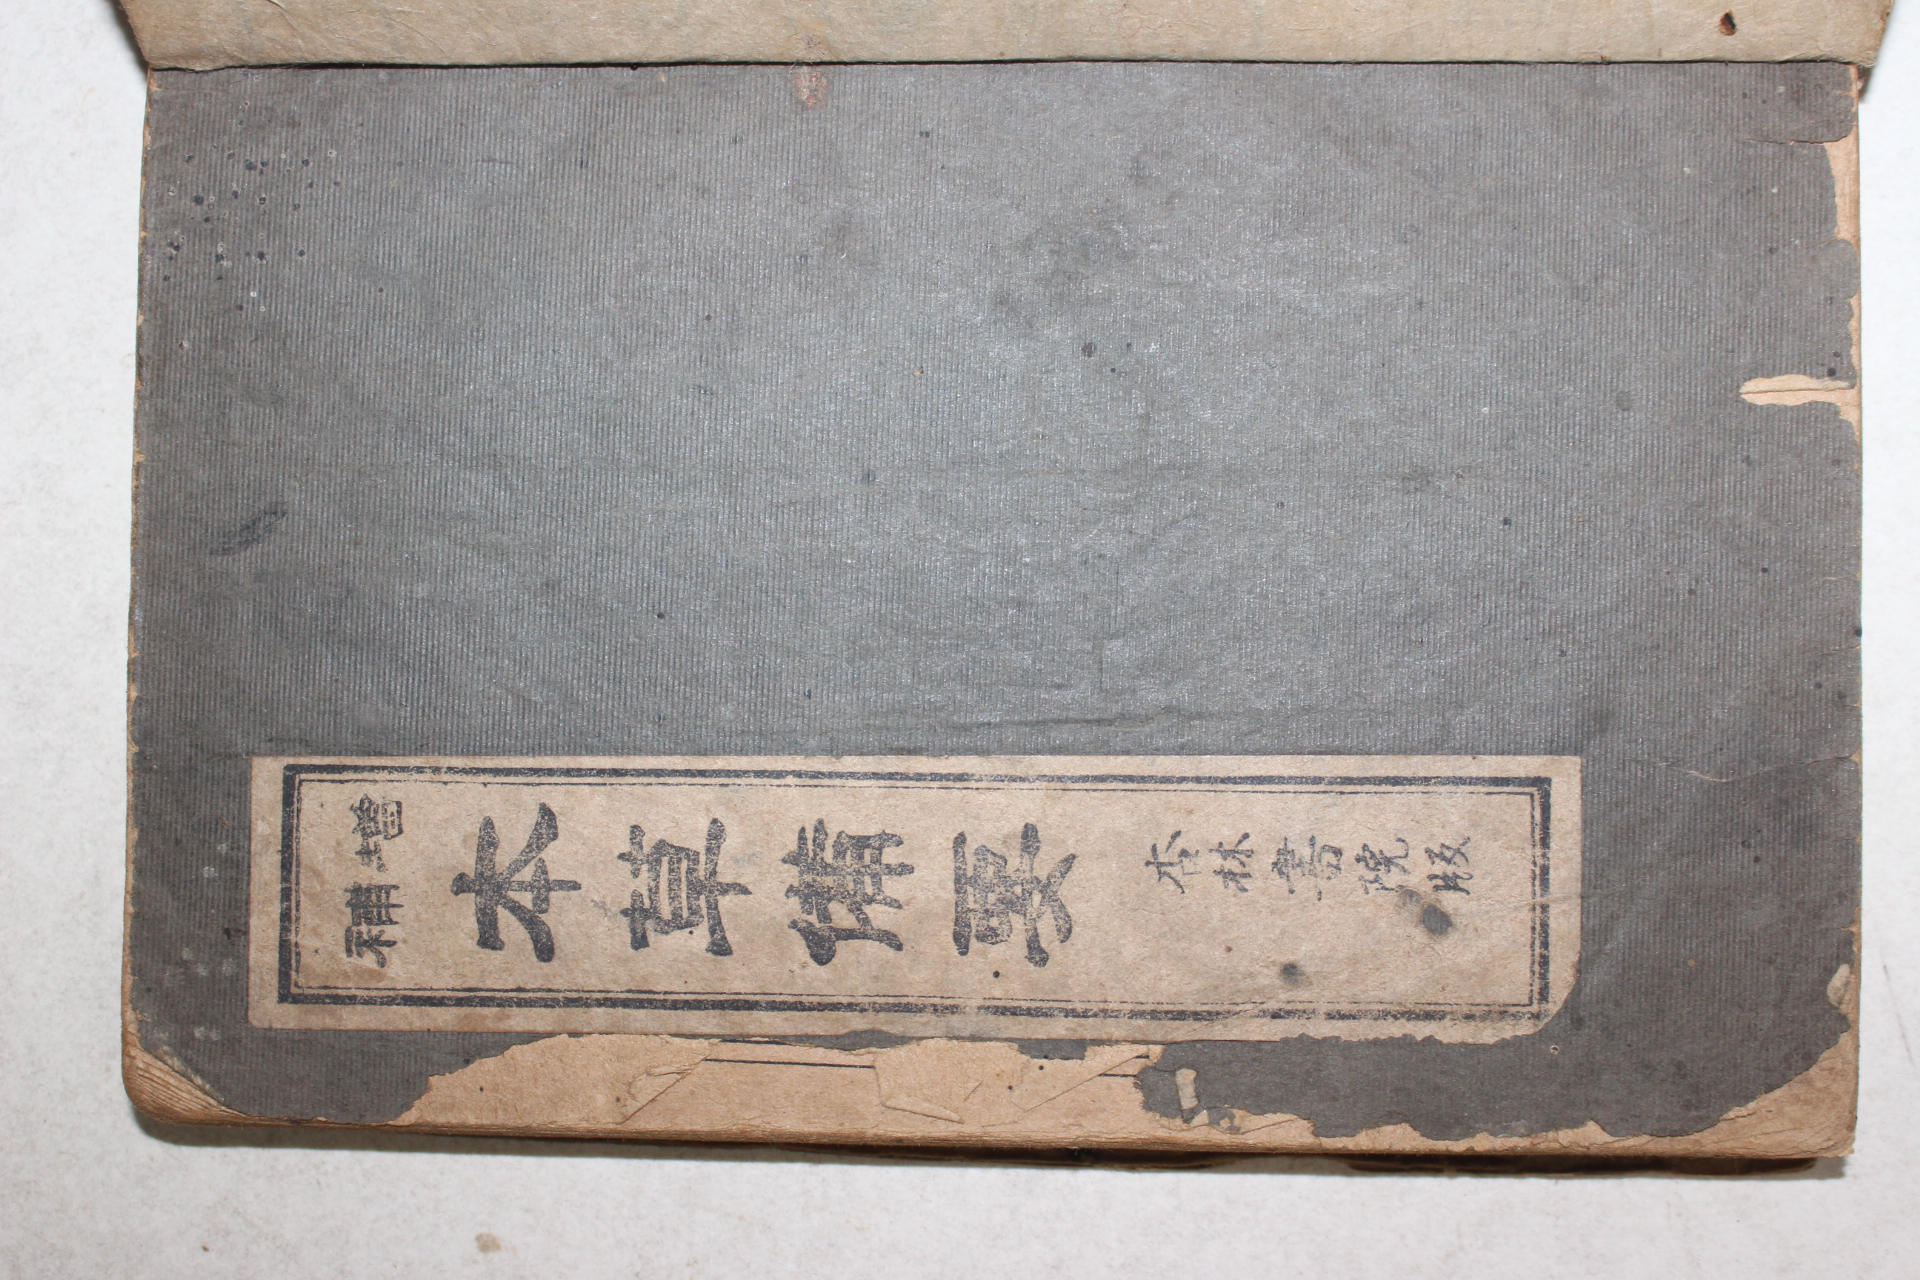 1943년 경성행림서원 왕앙(汪昻) 의서 증보본초비요(增補本草備要)